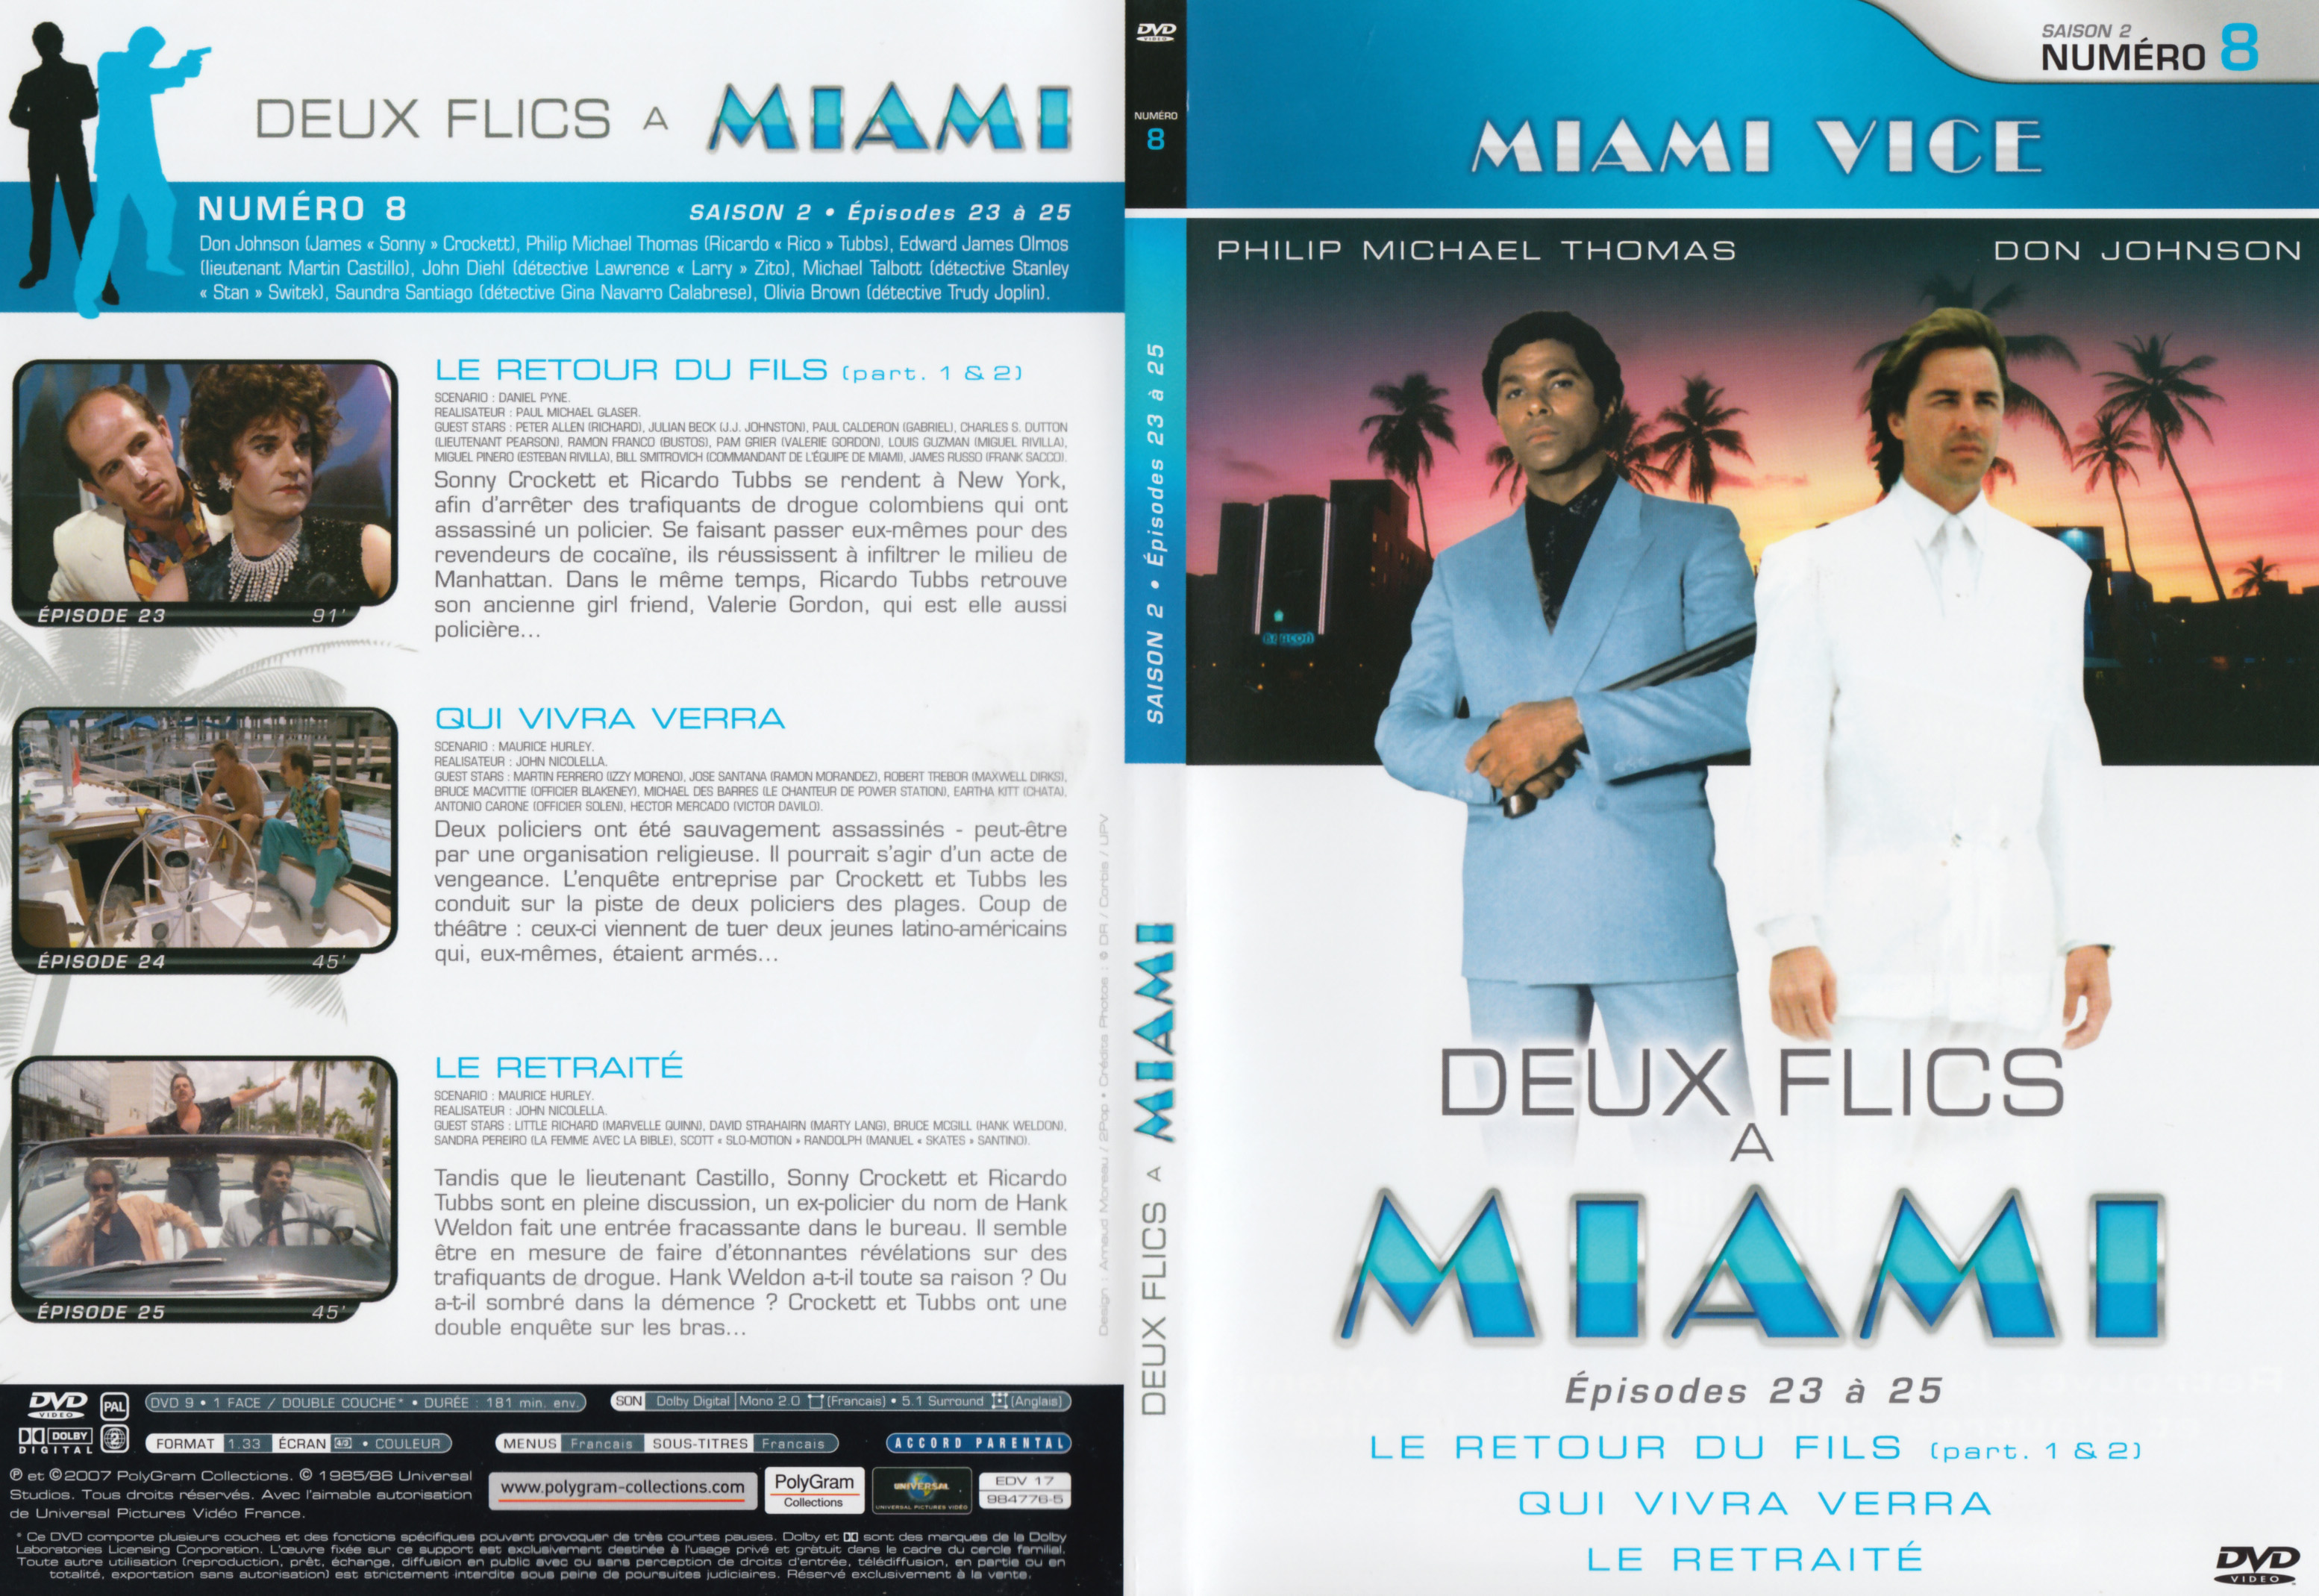 Jaquette DVD Deux flics  Miami Saison 2 vol 08